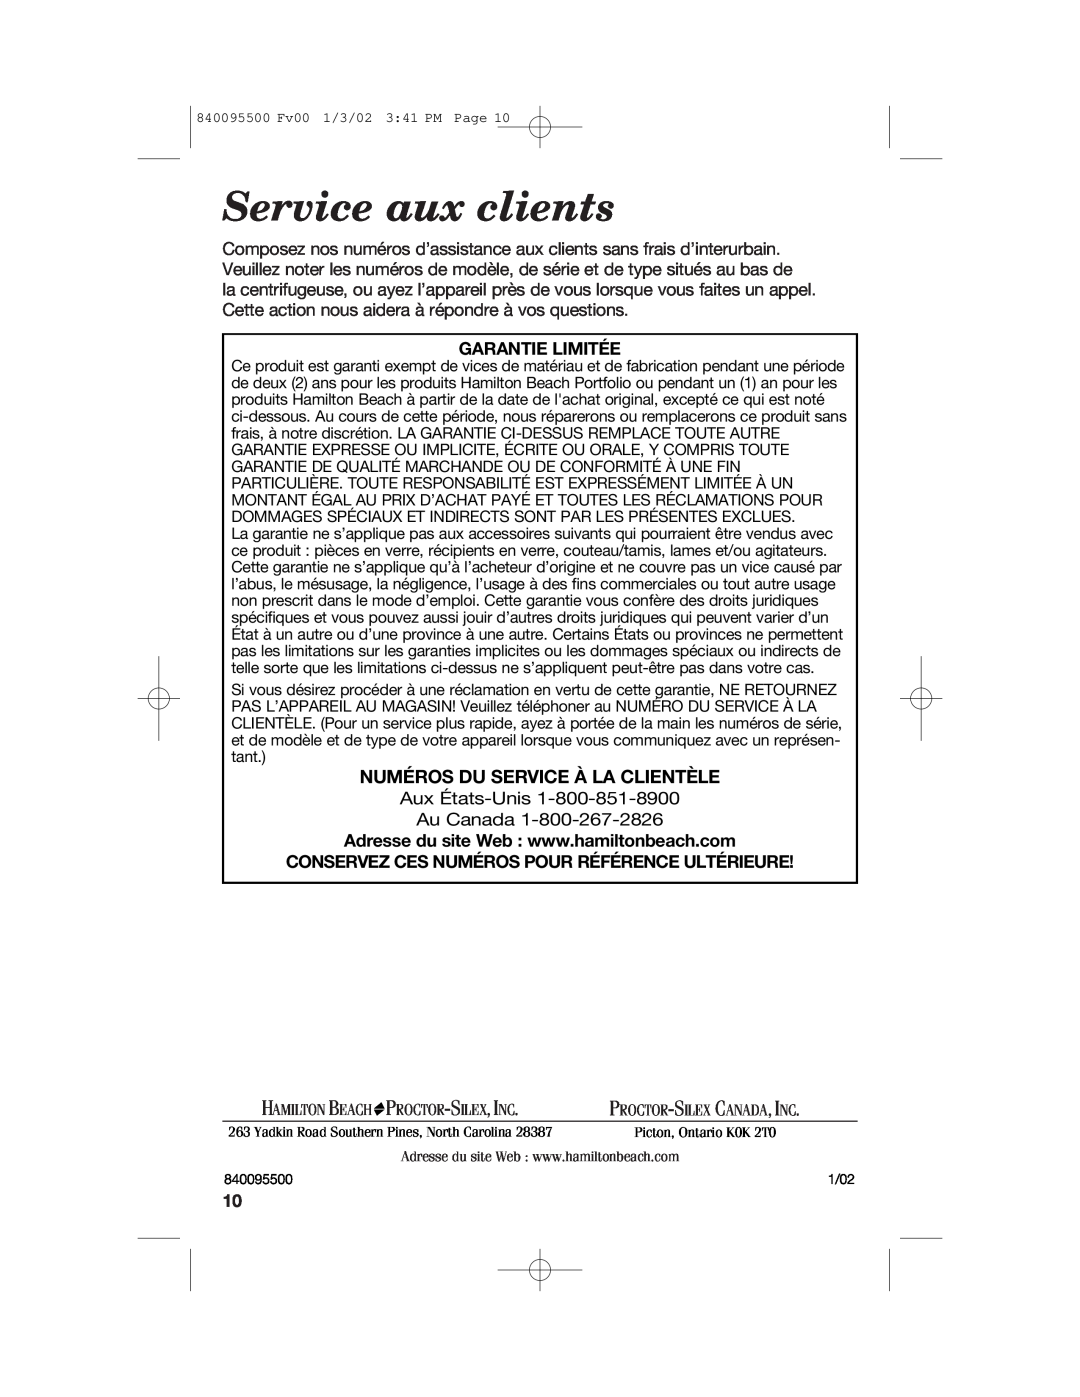 Hamilton Beach 840095500 manual Service aux clients, Numéros Du Service À La Clientèle 